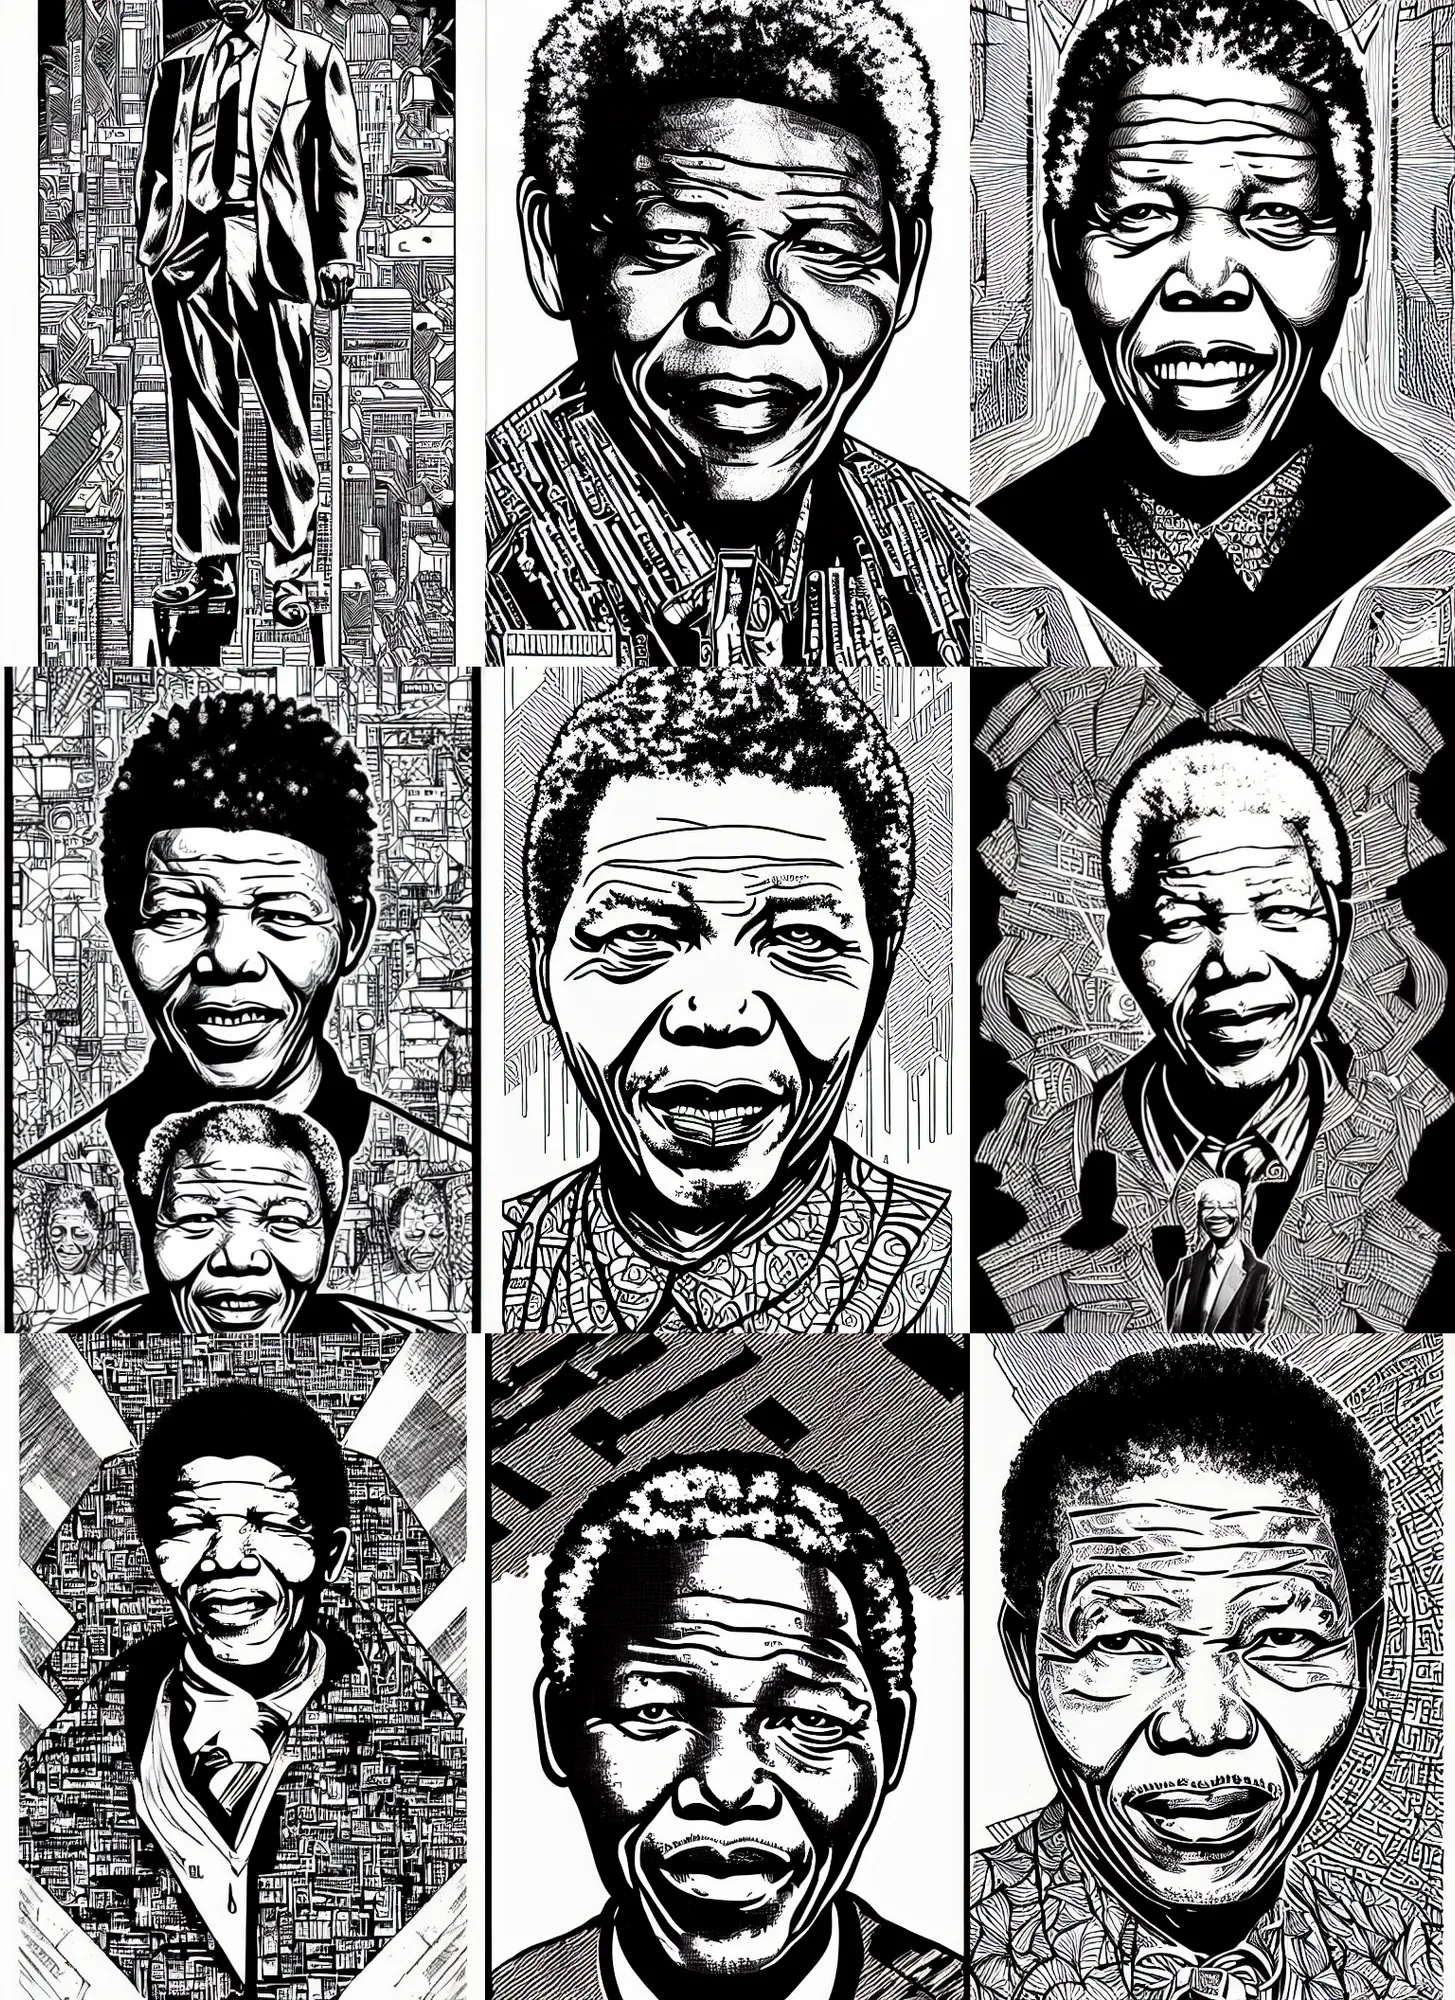 simon stratford - Drawing of Nelson Mandela